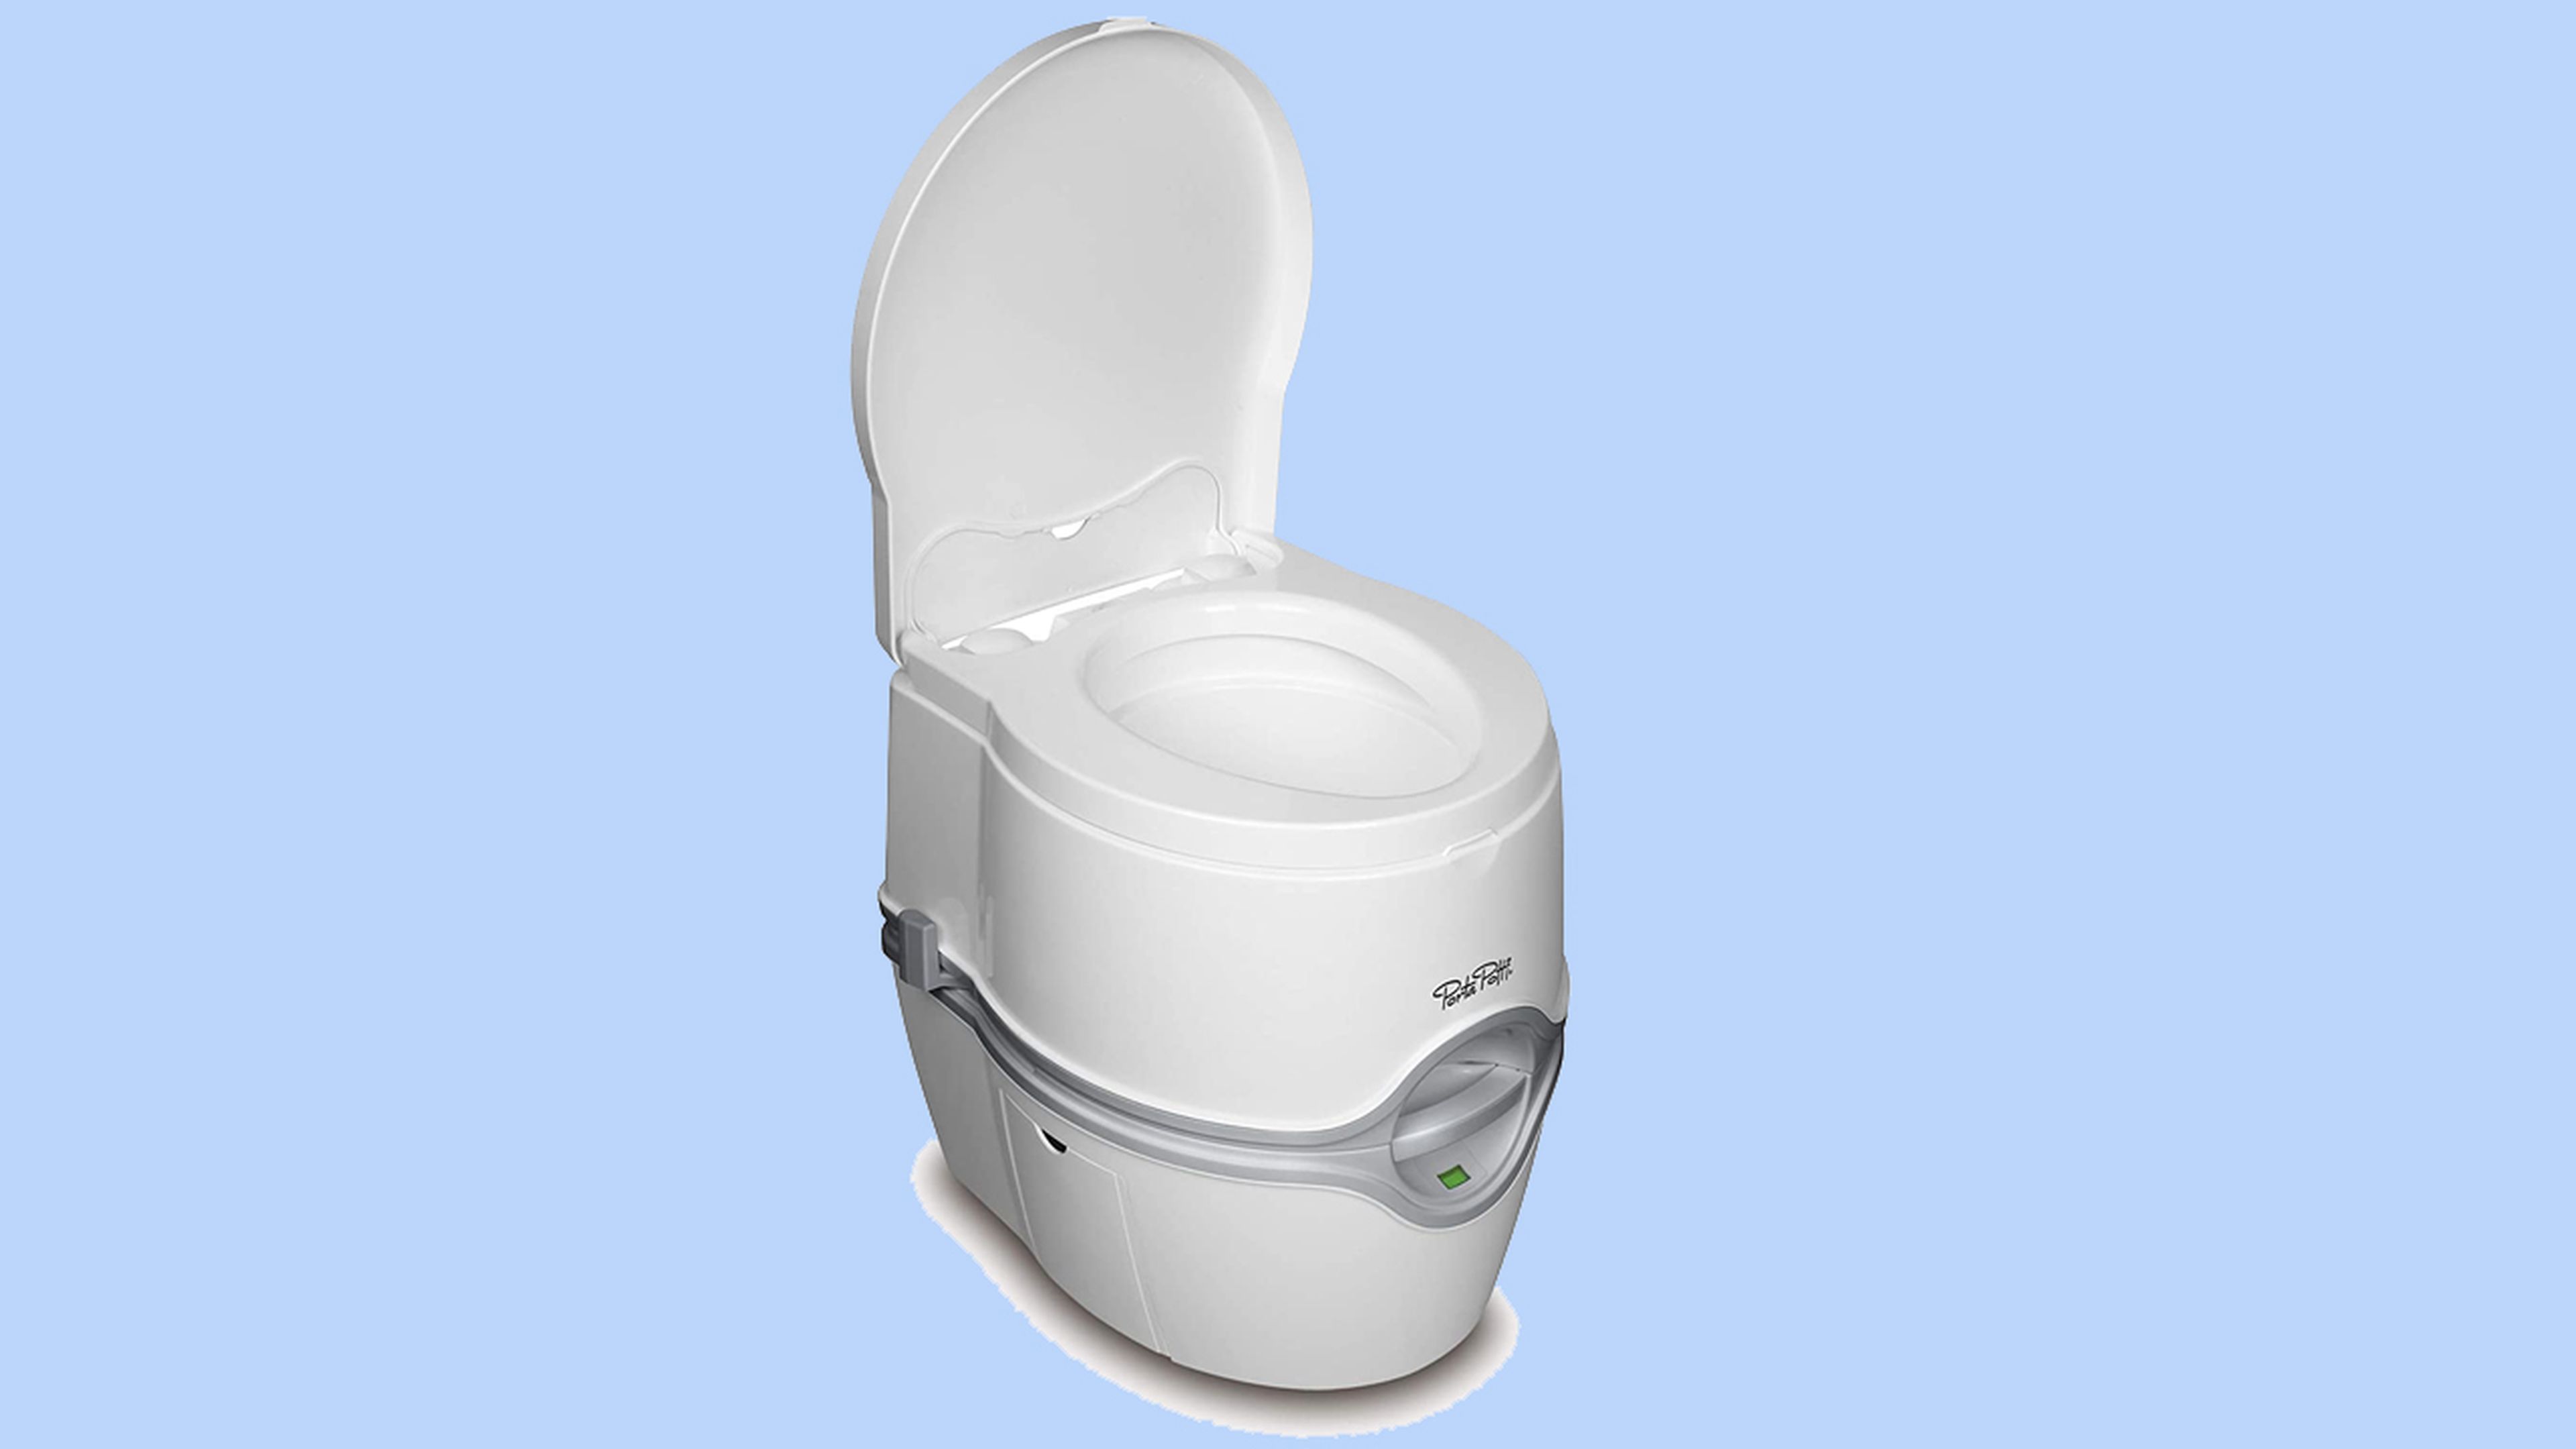 WC químico portátil para campers. Comparativa y guía de compra